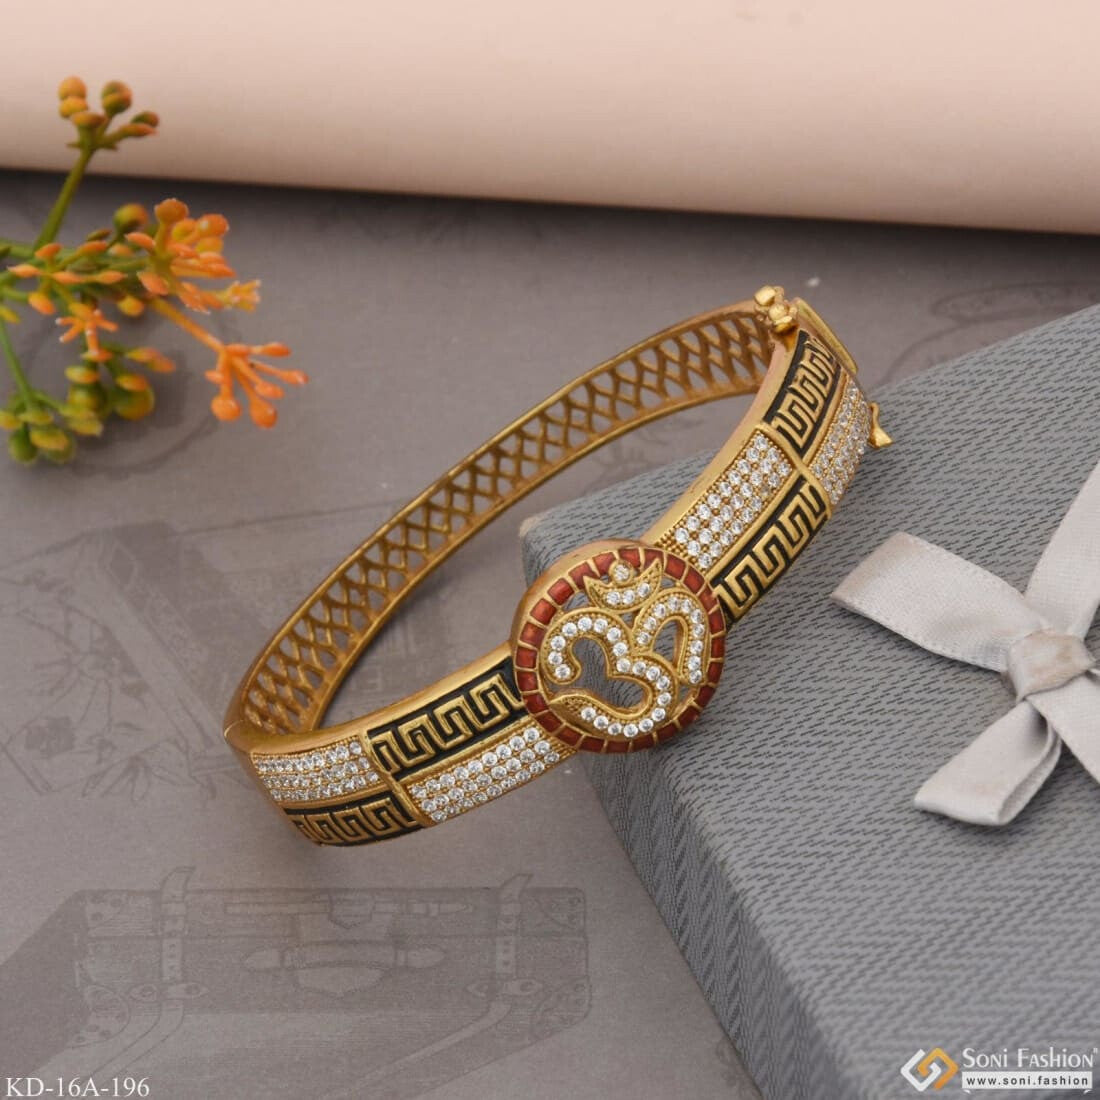 Round Real Diamond Designer Bracelet, Weight: 12 Gms at Rs 107000 in Mumbai